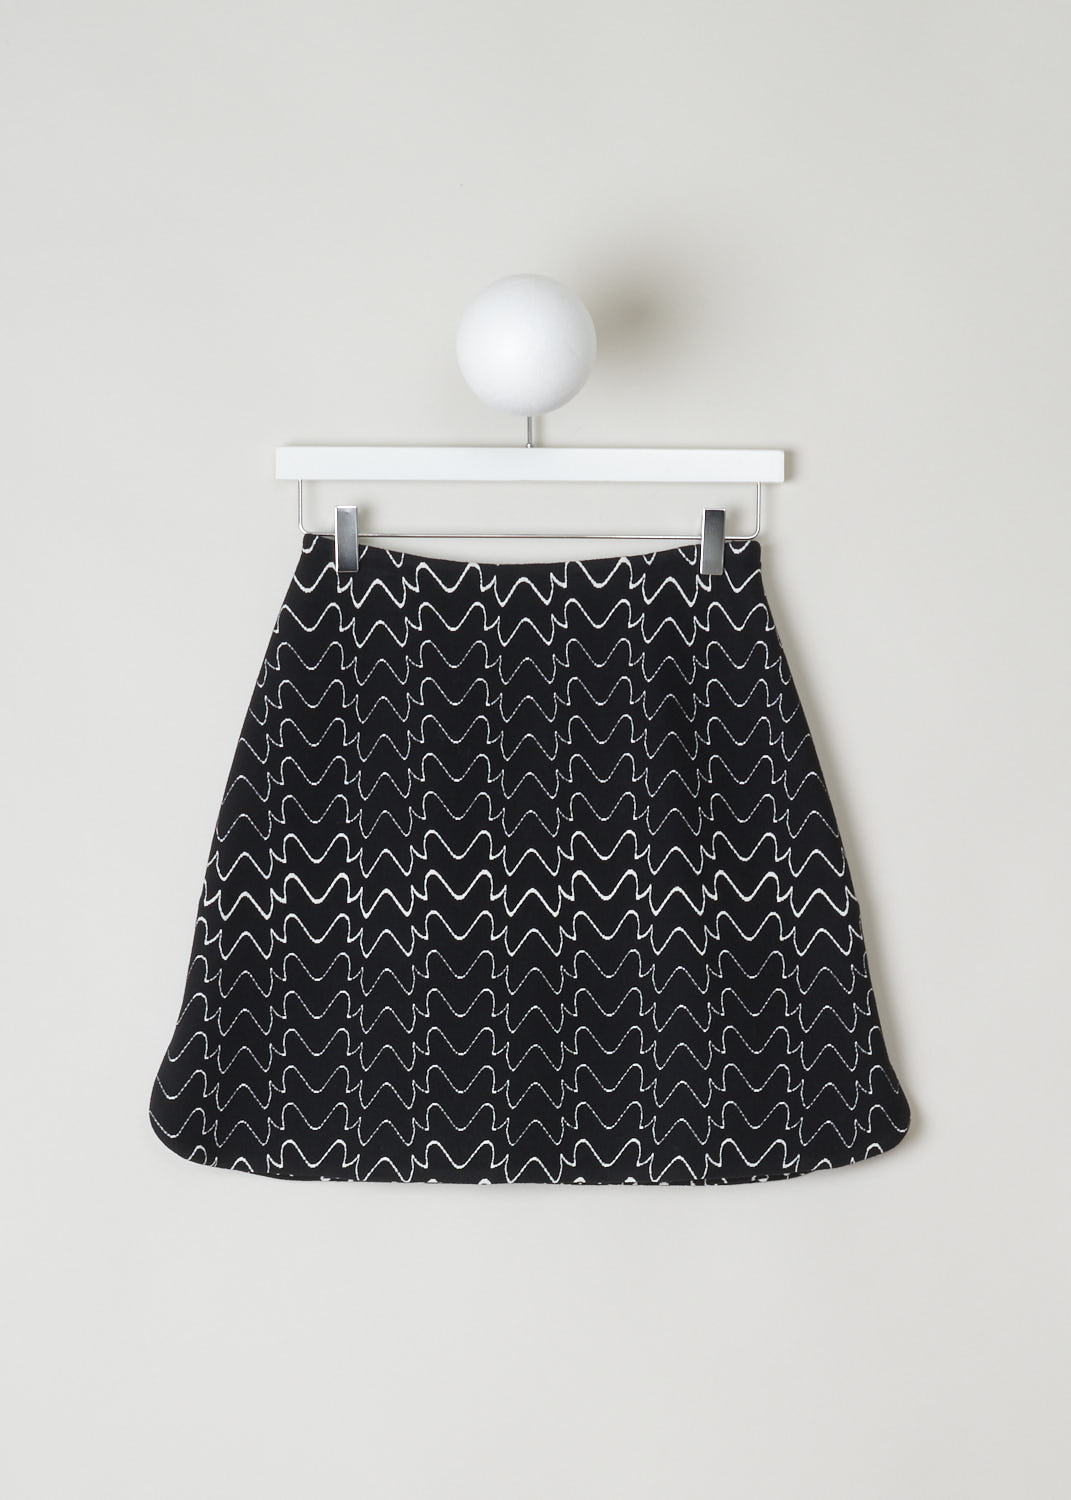 ALAÃA, BLACK AND WHITE PRINT MINI SKIRT, 9H9JE51SM516_C991_FILIGRANE, Black, Print, Front, Beautiful, sturdy mini skirt with a fun zigzag line pattern. The skirt has  slits on either side with rounded slits. 
